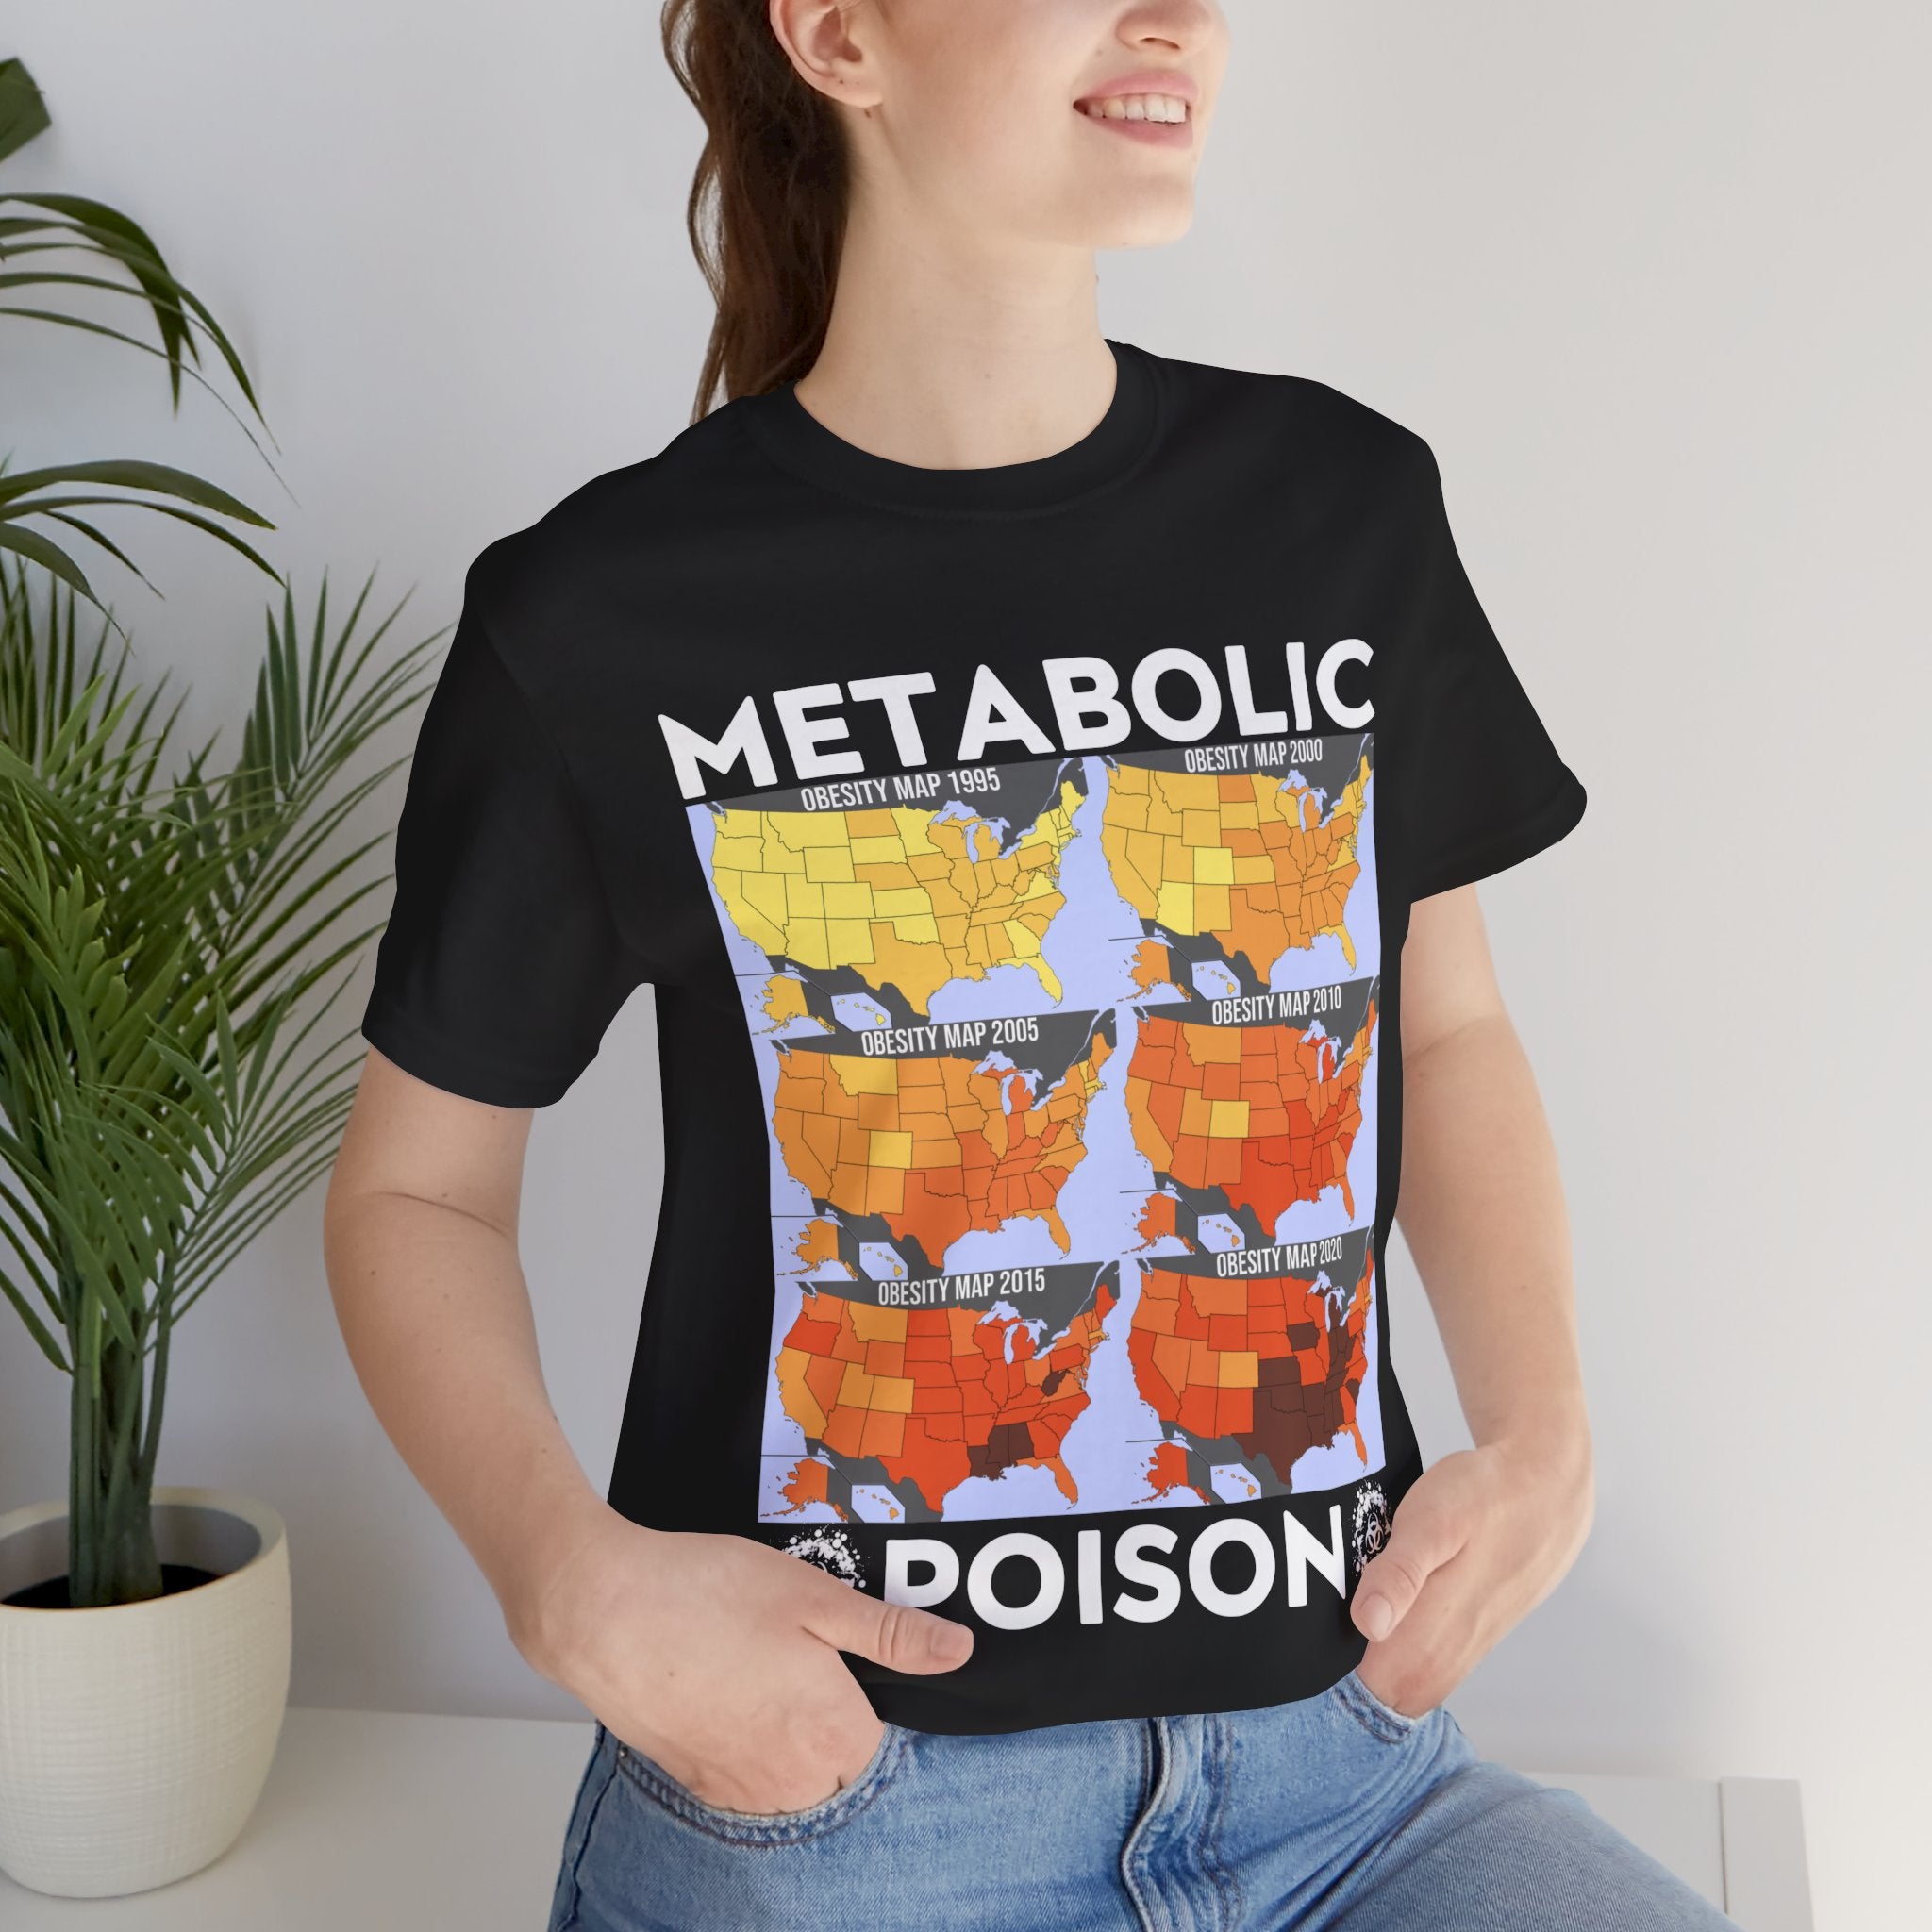 Metabolic Poison